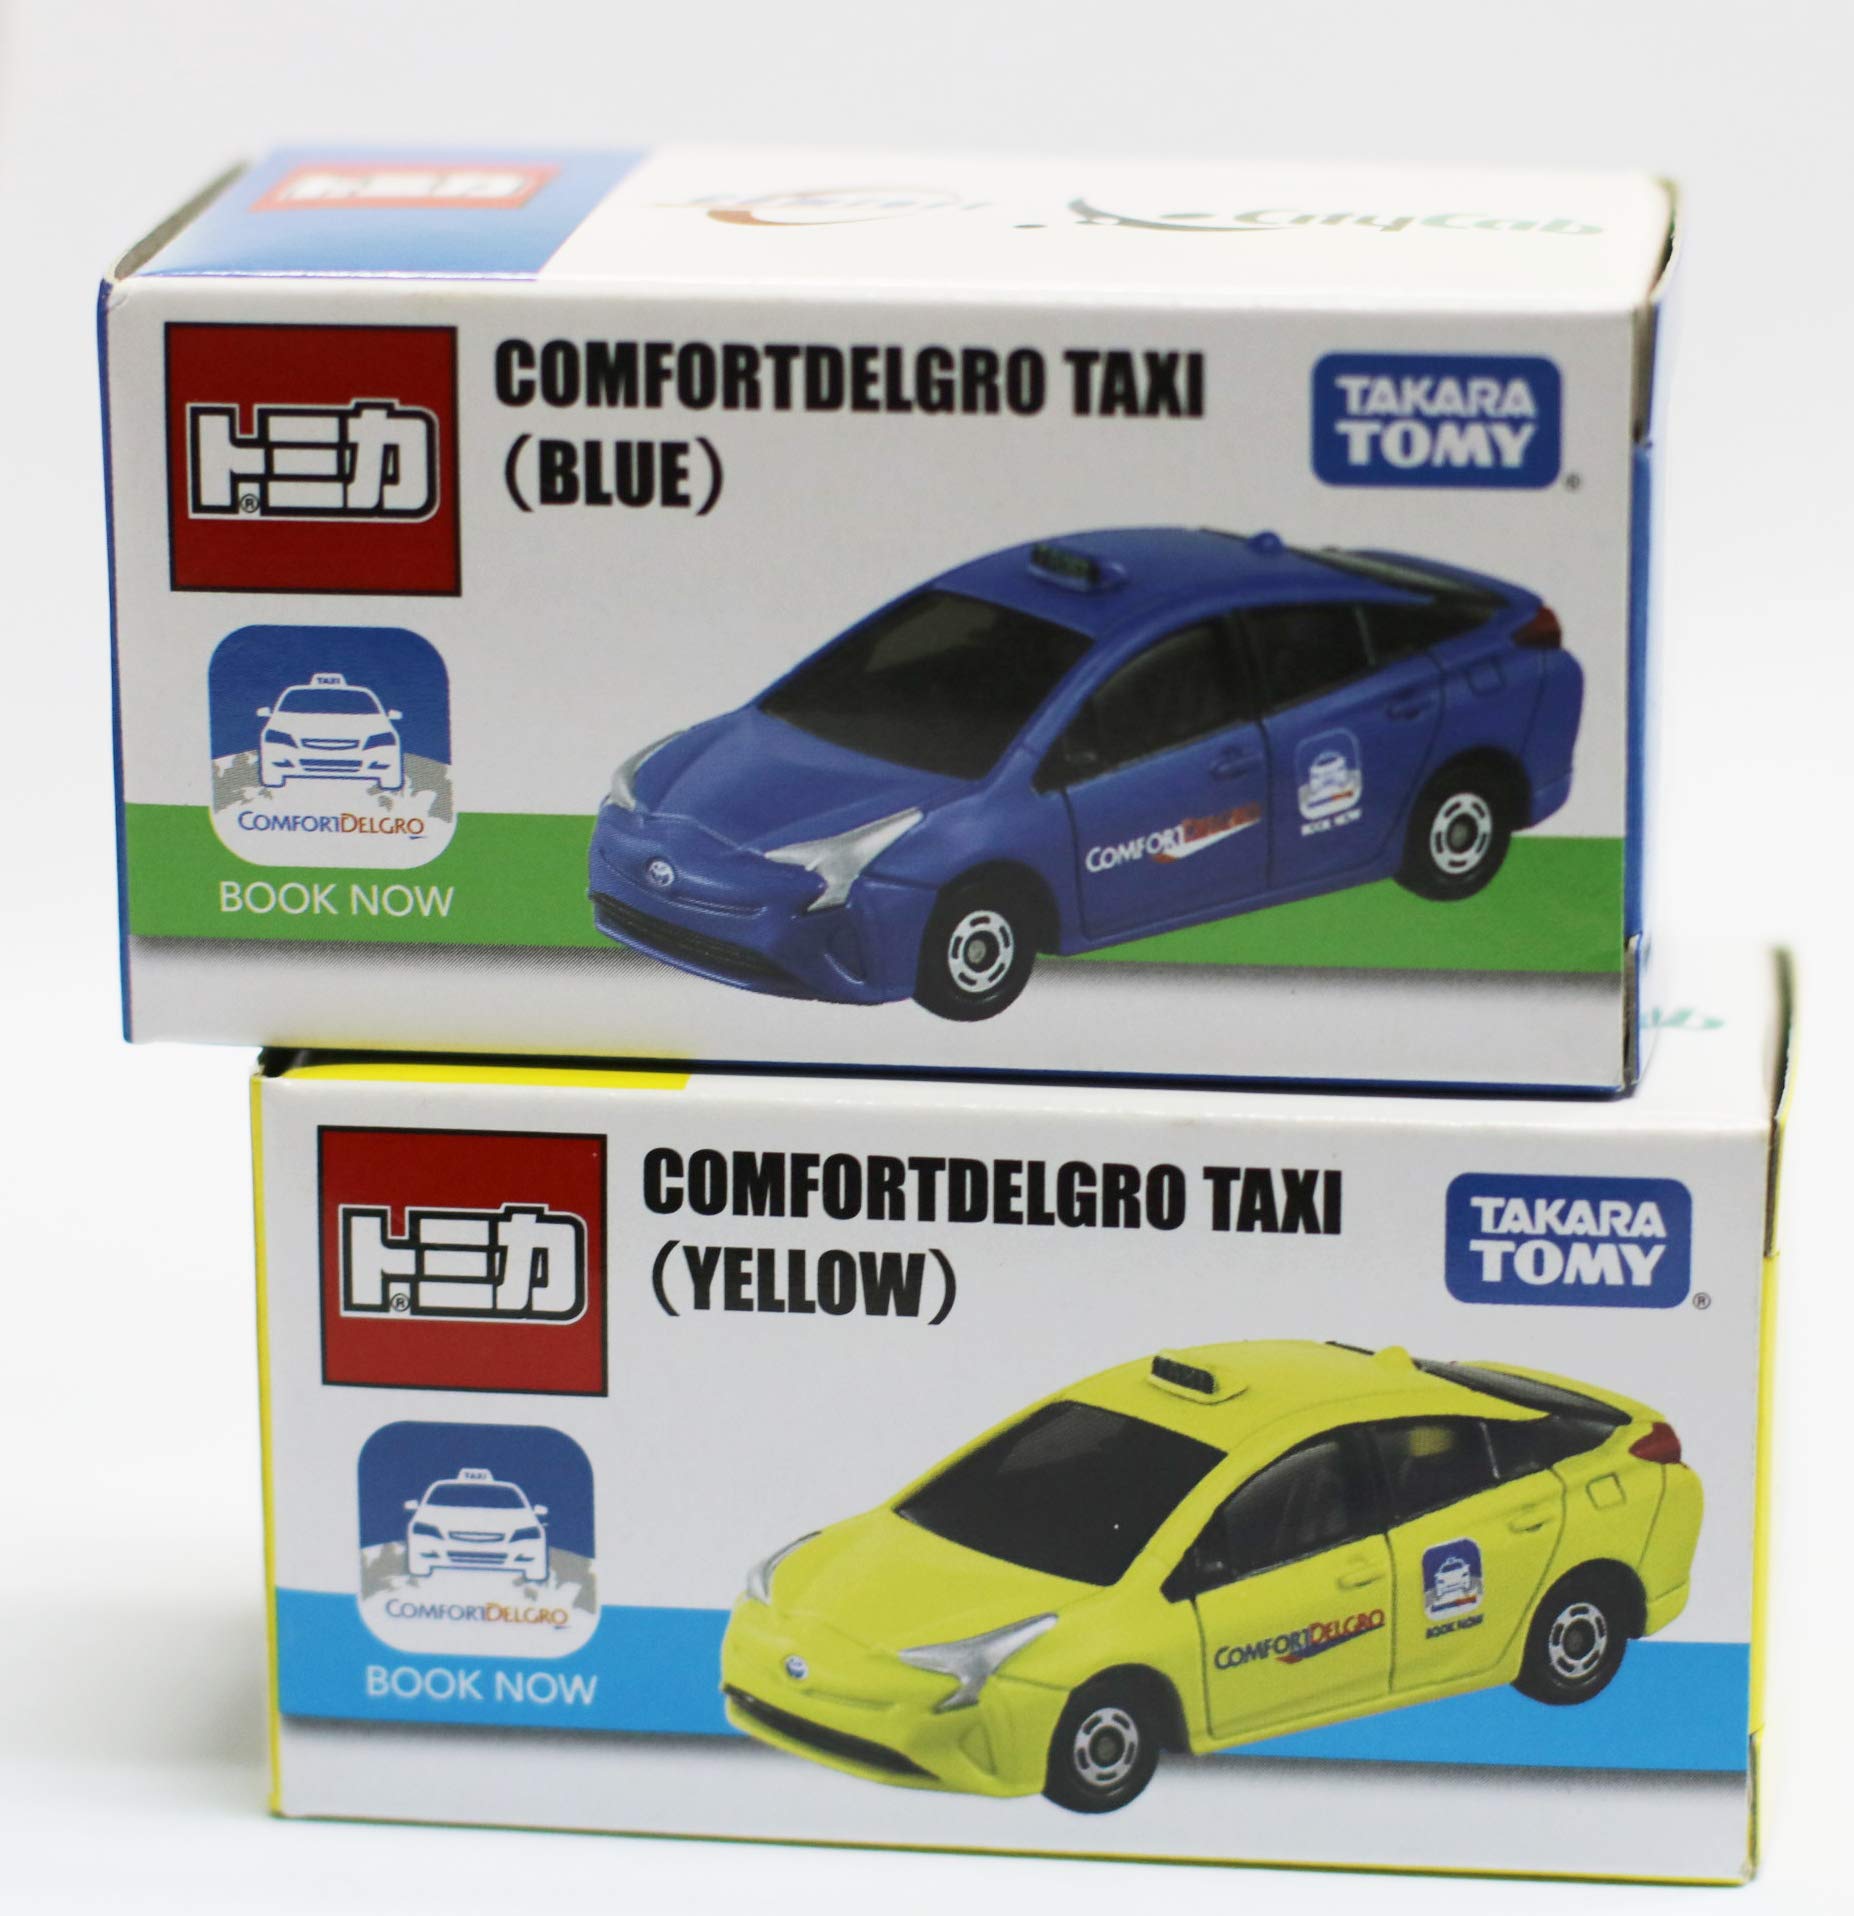 シンガポール限定 トミカ プリウス タクシー COMFORTDELGRO TAXI 青色 黄色 二台セット TOMICA 海外 日本未発売 並行輸入品